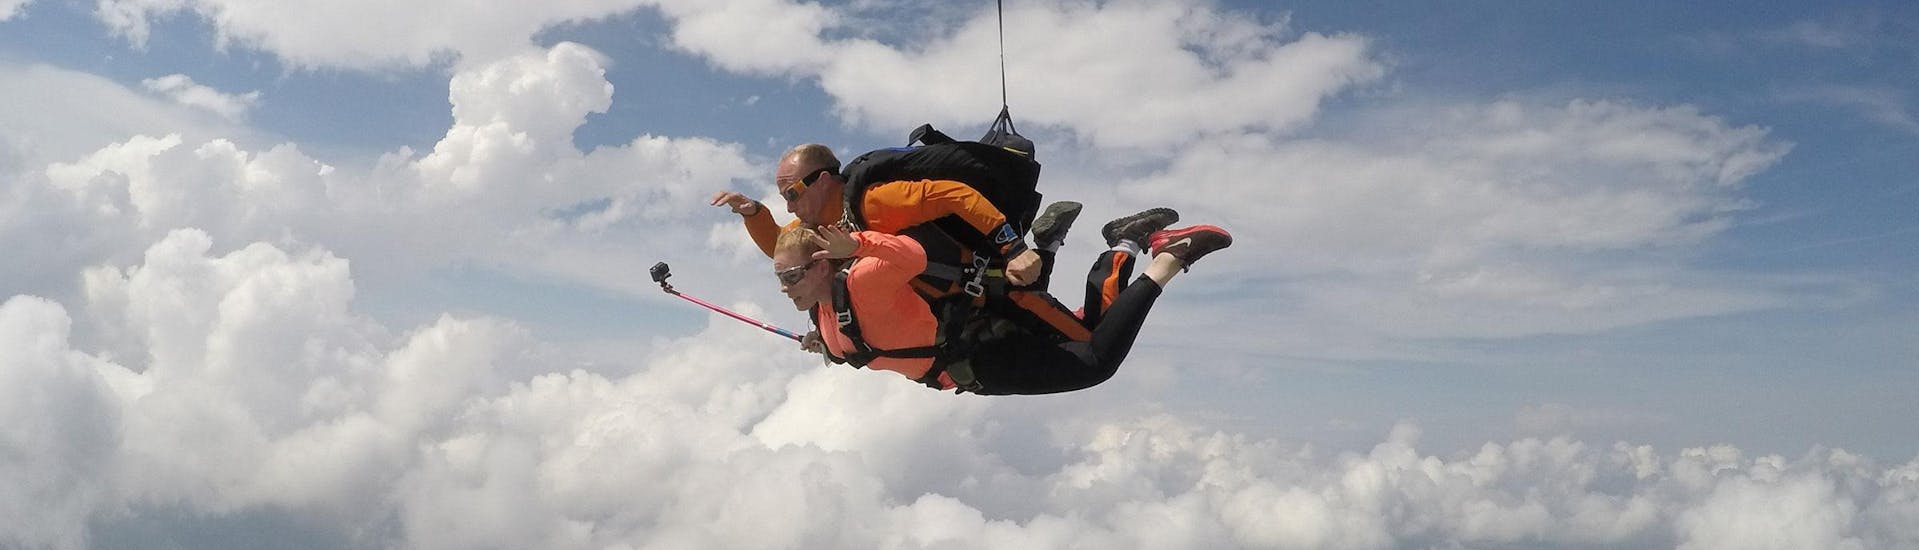 un pilote de bfc parachutisme effectue un Saut en parachute tandem à 4000m avec son client à Dijon.